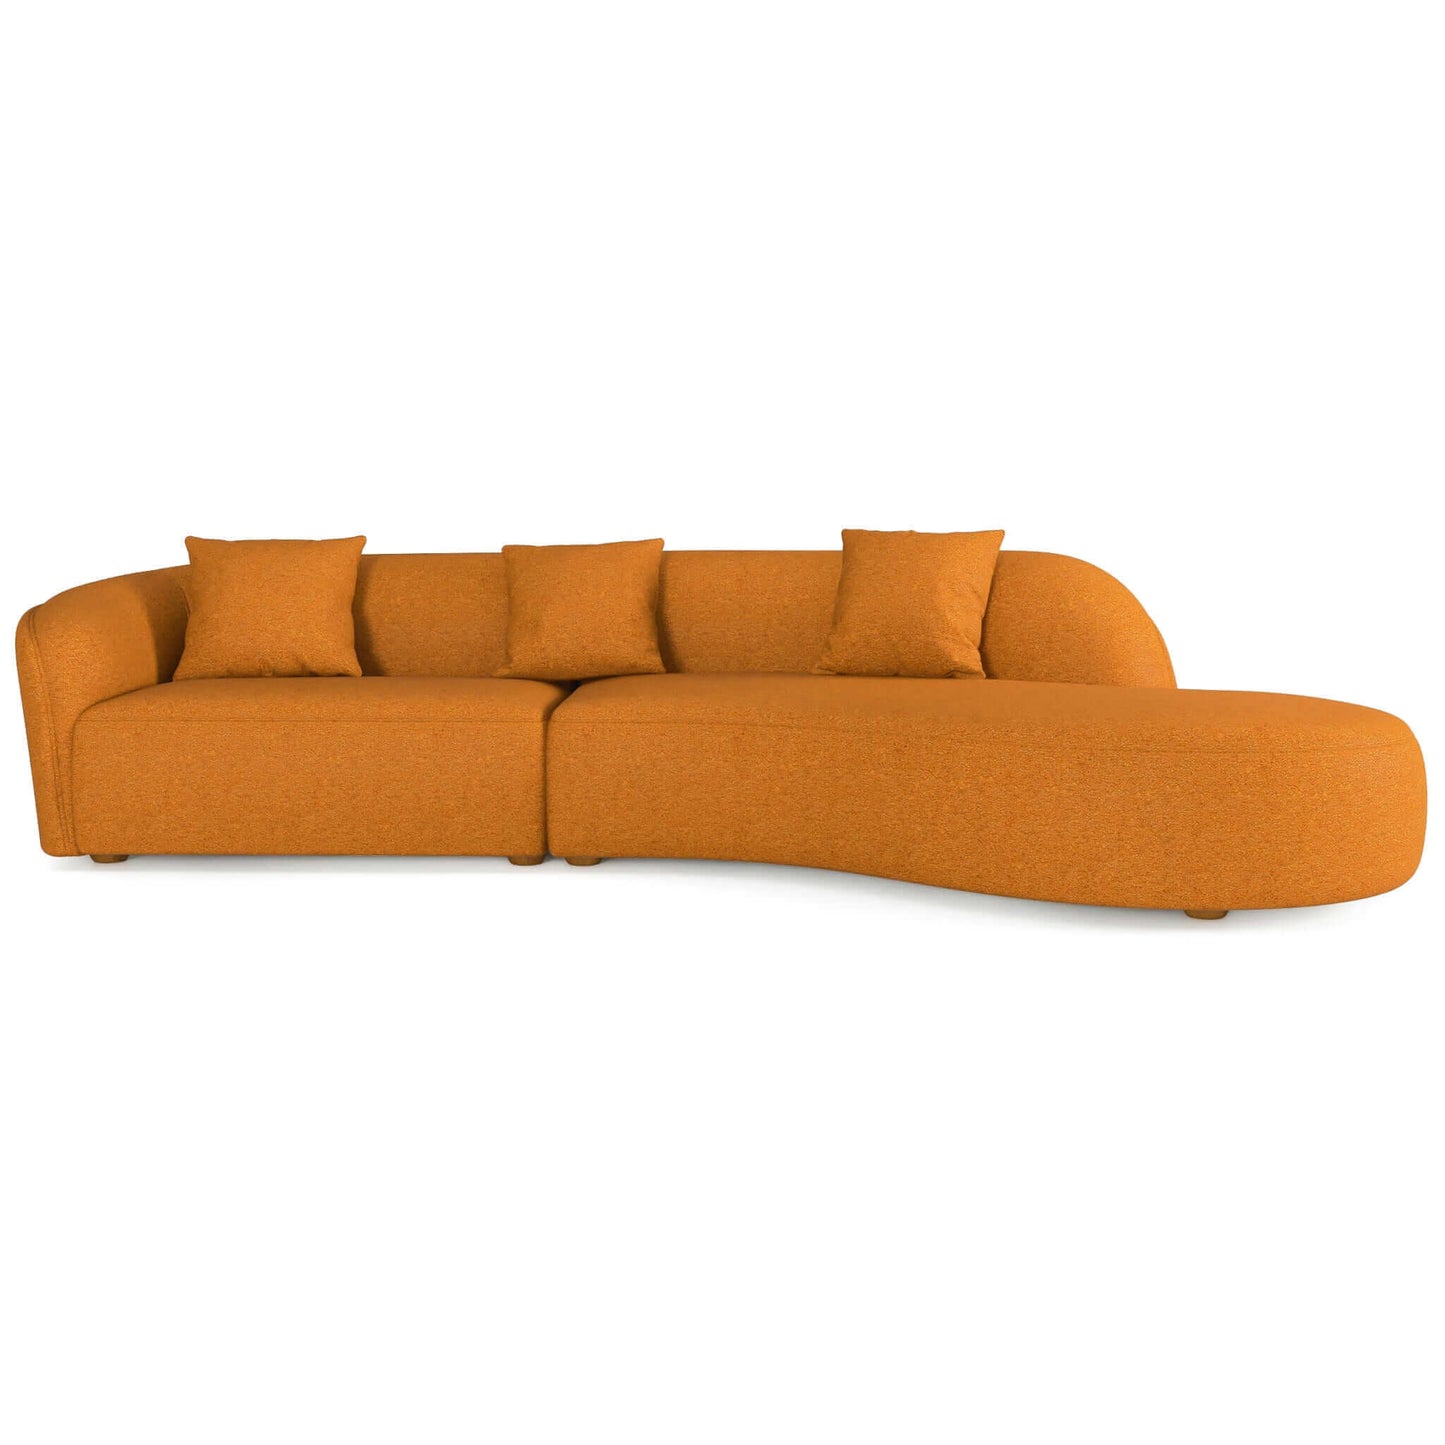 Ashcroft Furniture Co Sofas 126" / Orange Boucle Elijah Japandi Style Curvy Sectional Sofa